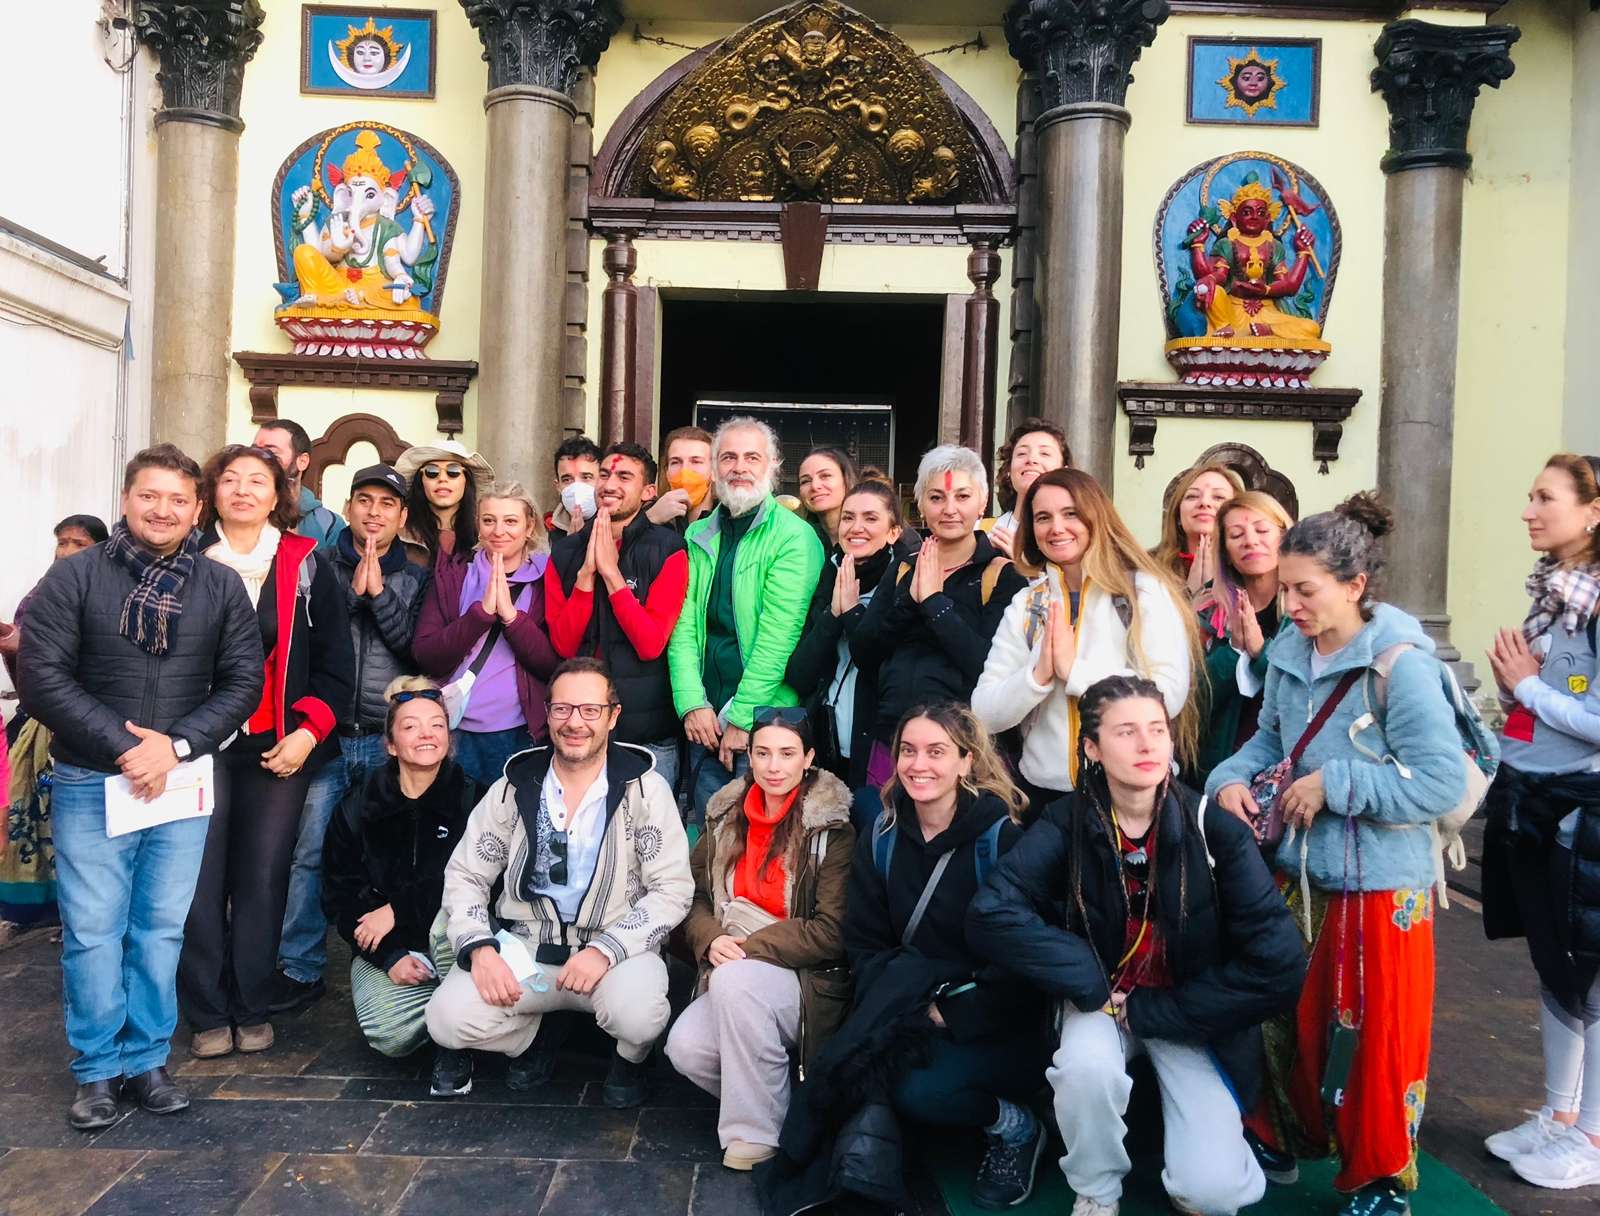 A group photo of tourist on Pashupati Nath Kathmandu